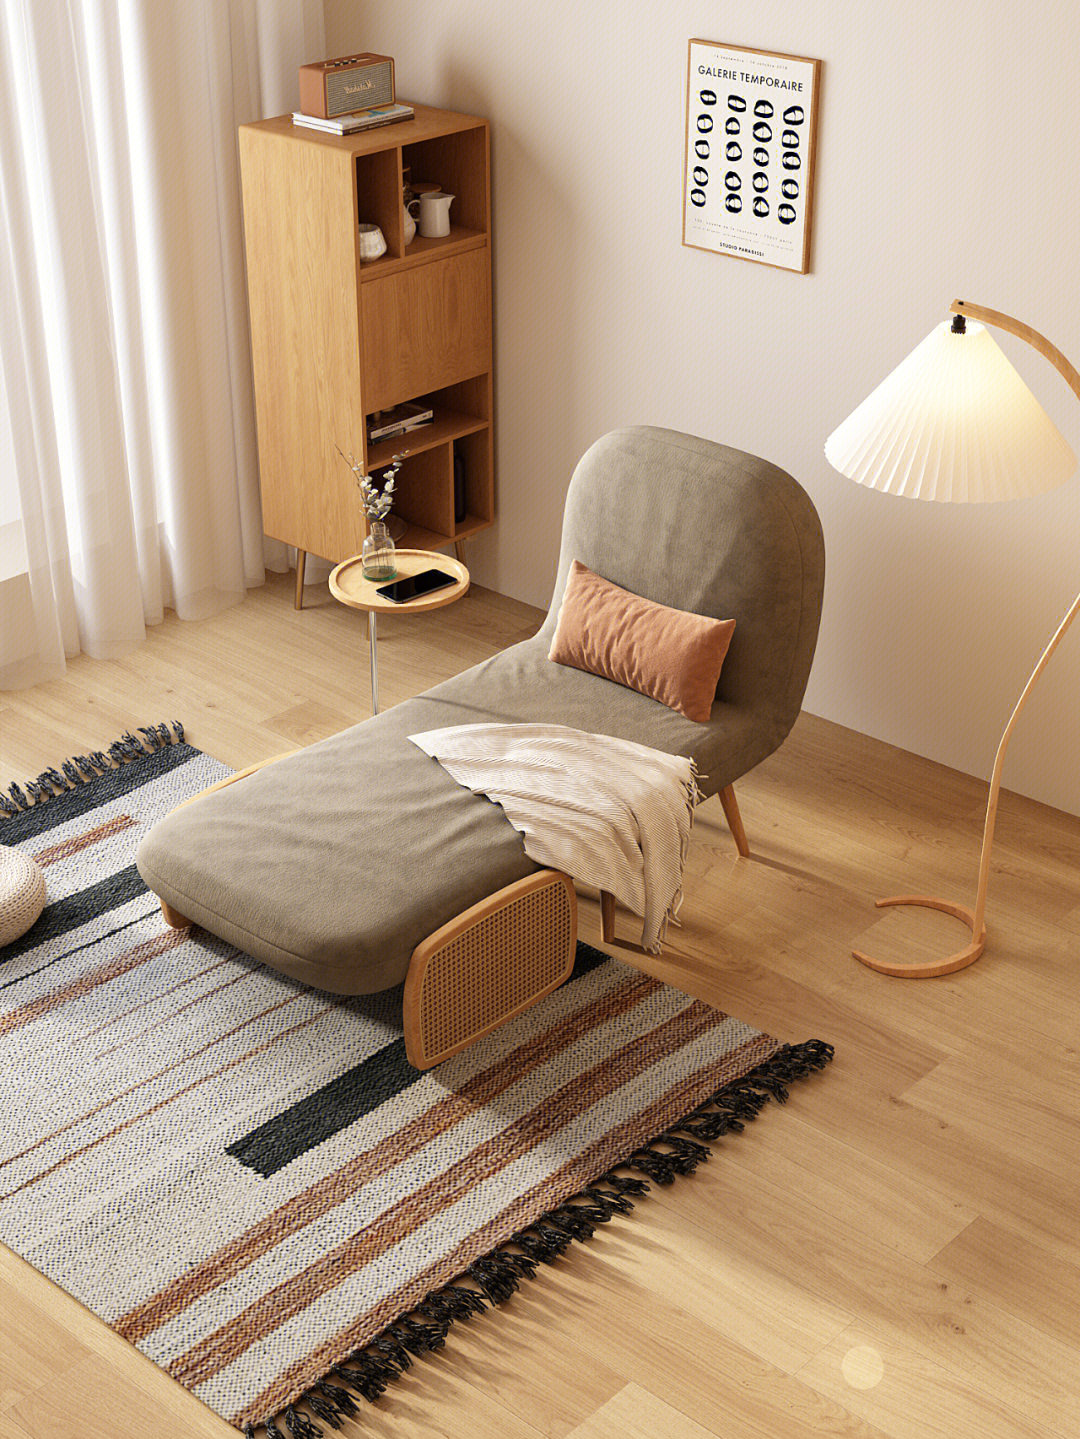 房屋空间小,如何打造合理舒适的休闲空间,一张休闲单人折叠沙发床解决